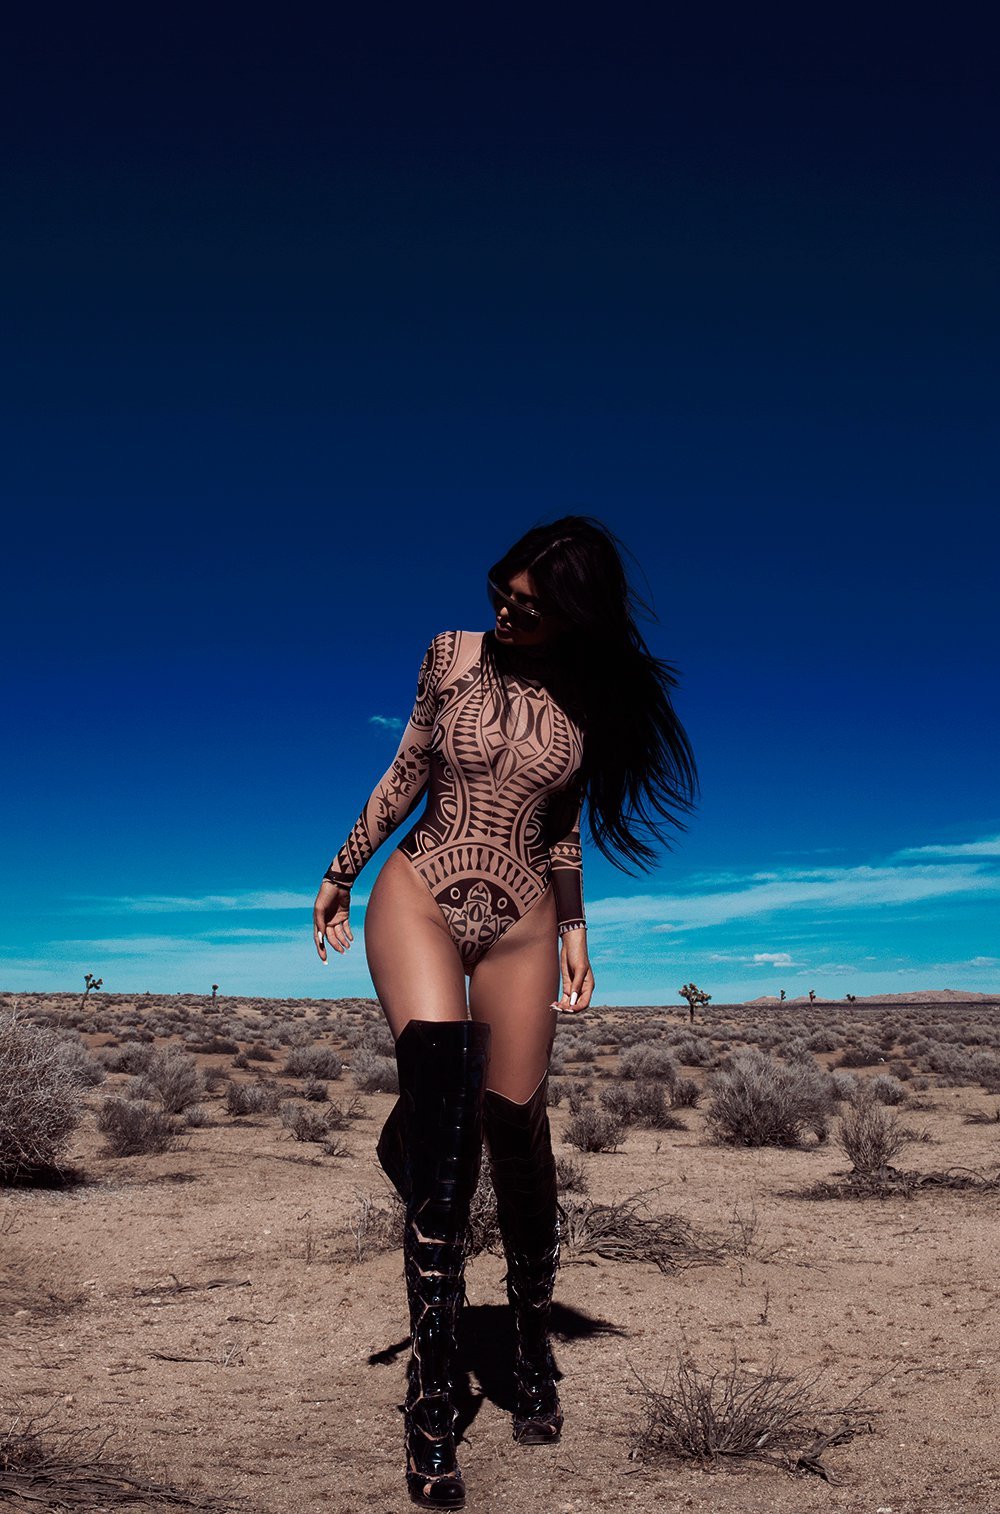 Кайли Дженнер выпустила пикантную фотосессию в пустыне